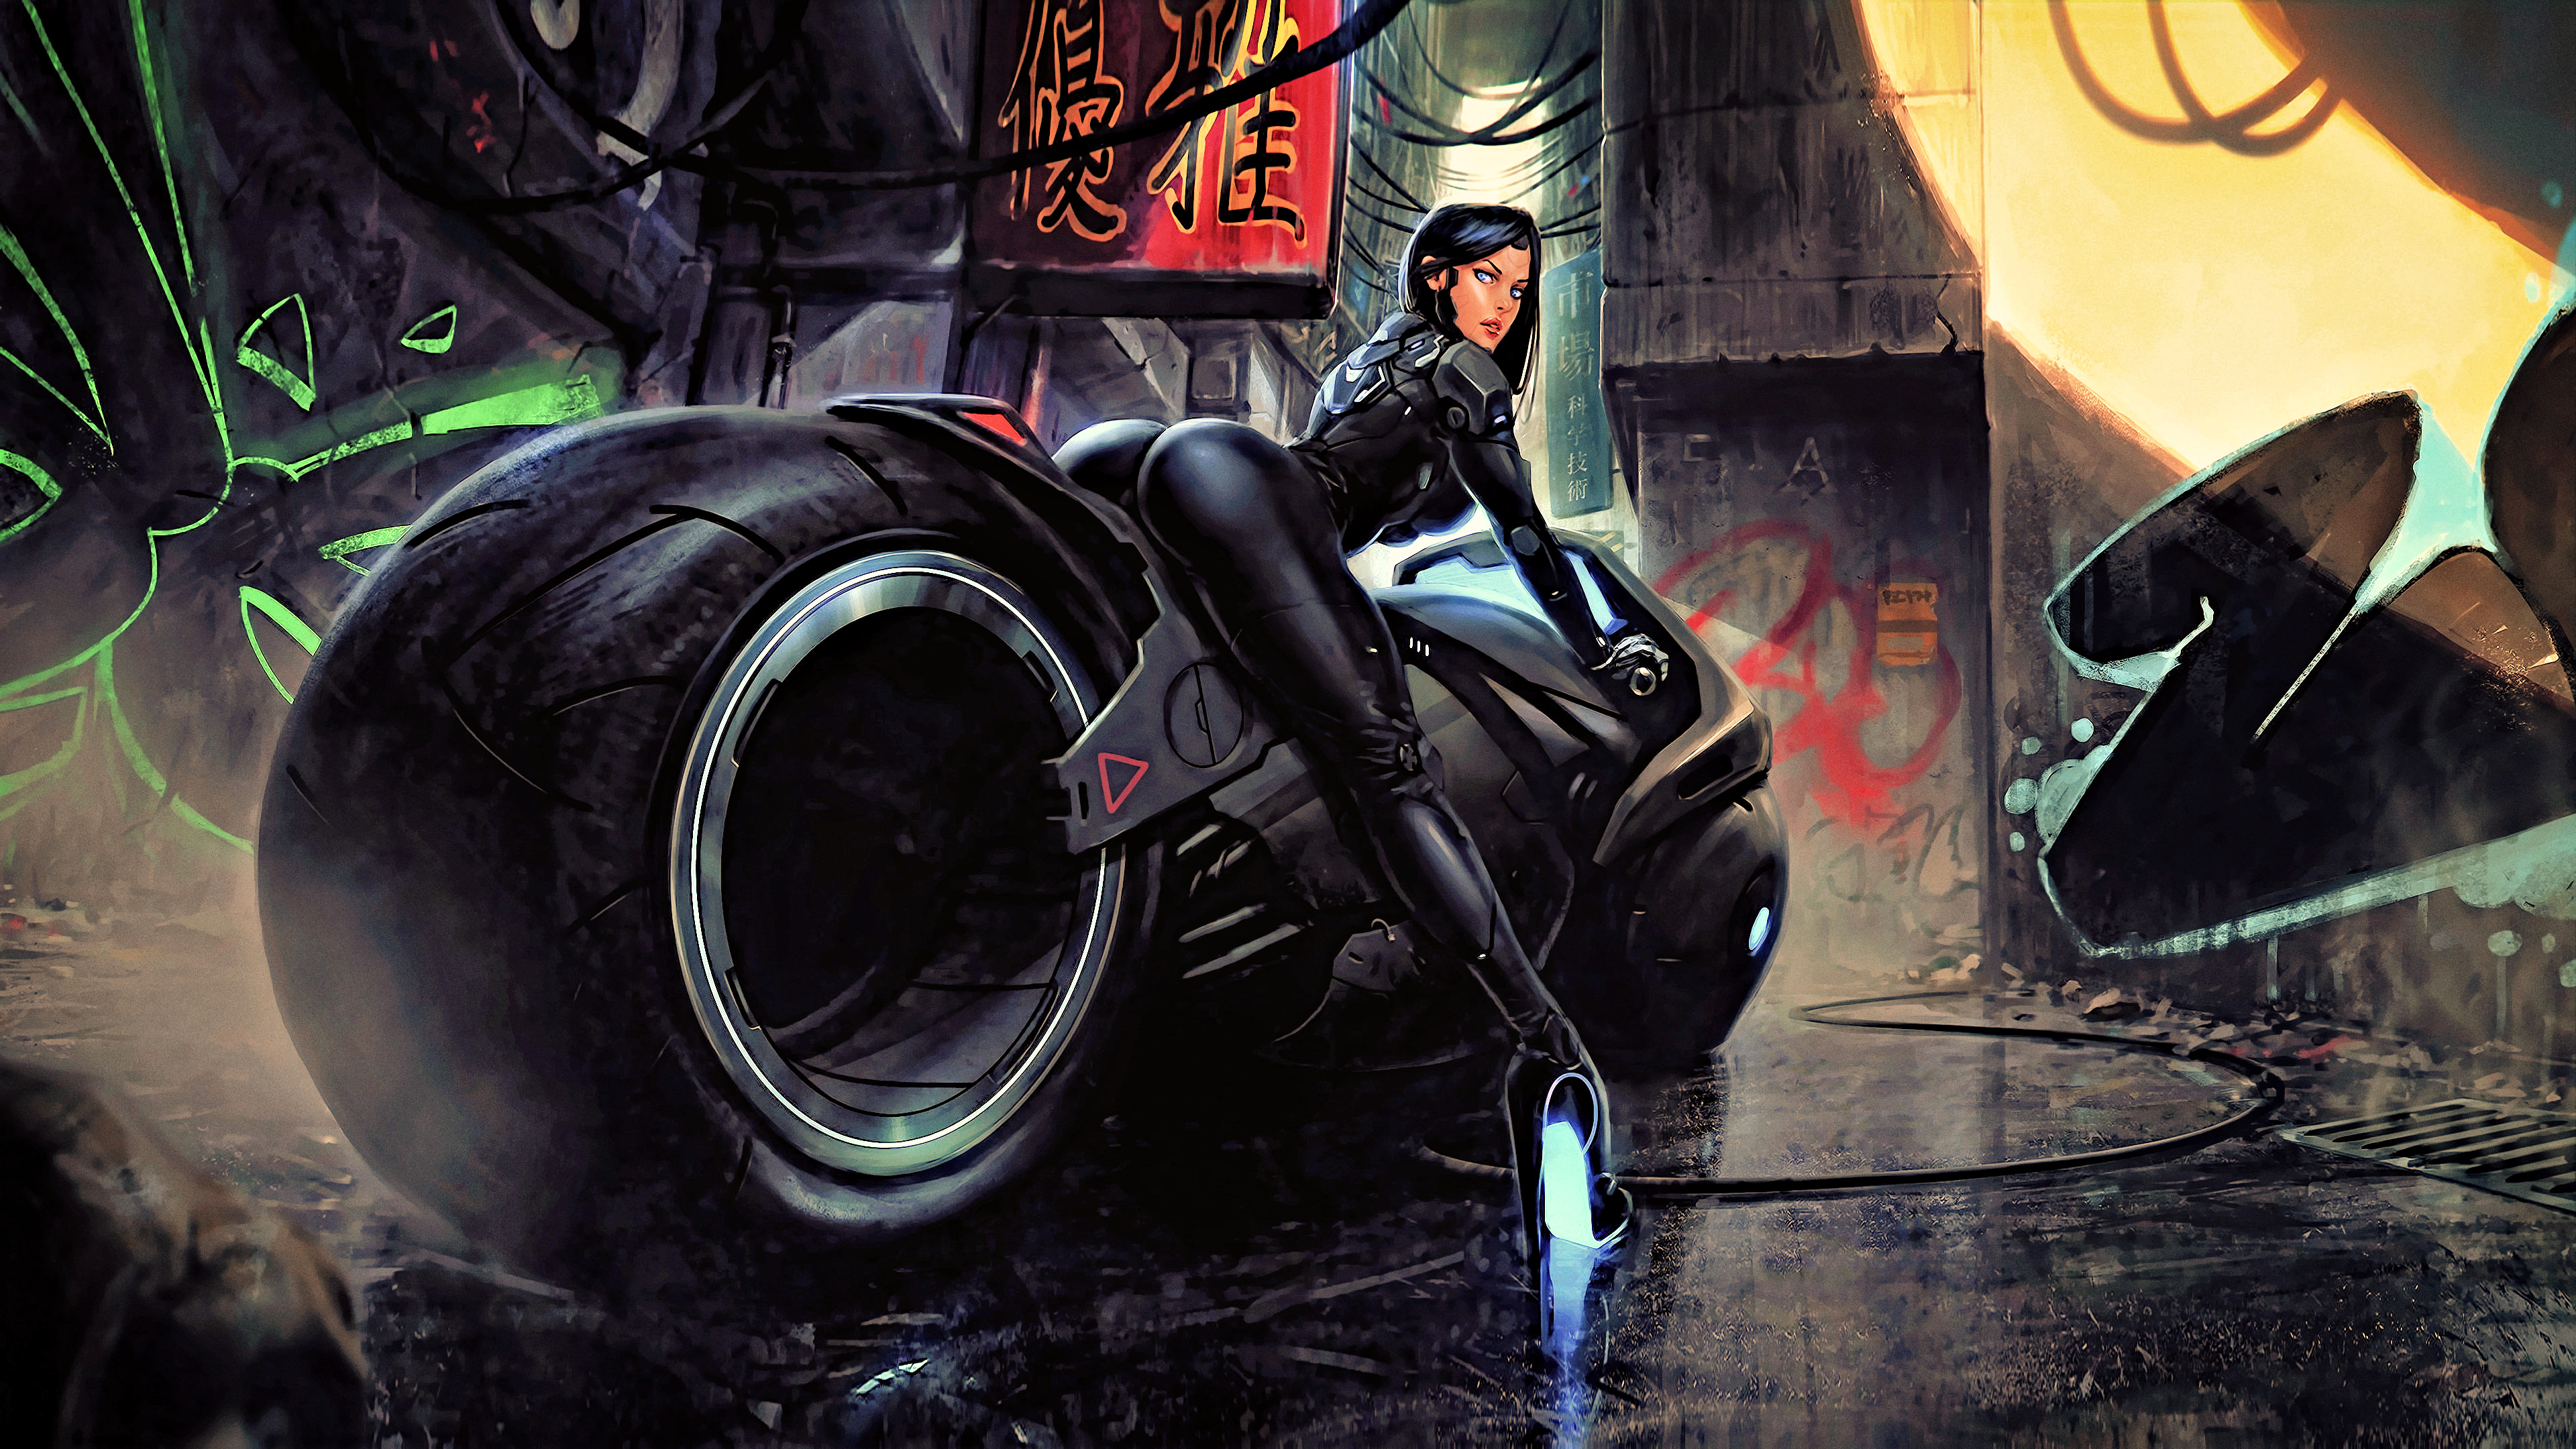 Cyberpunk art bike фото 59